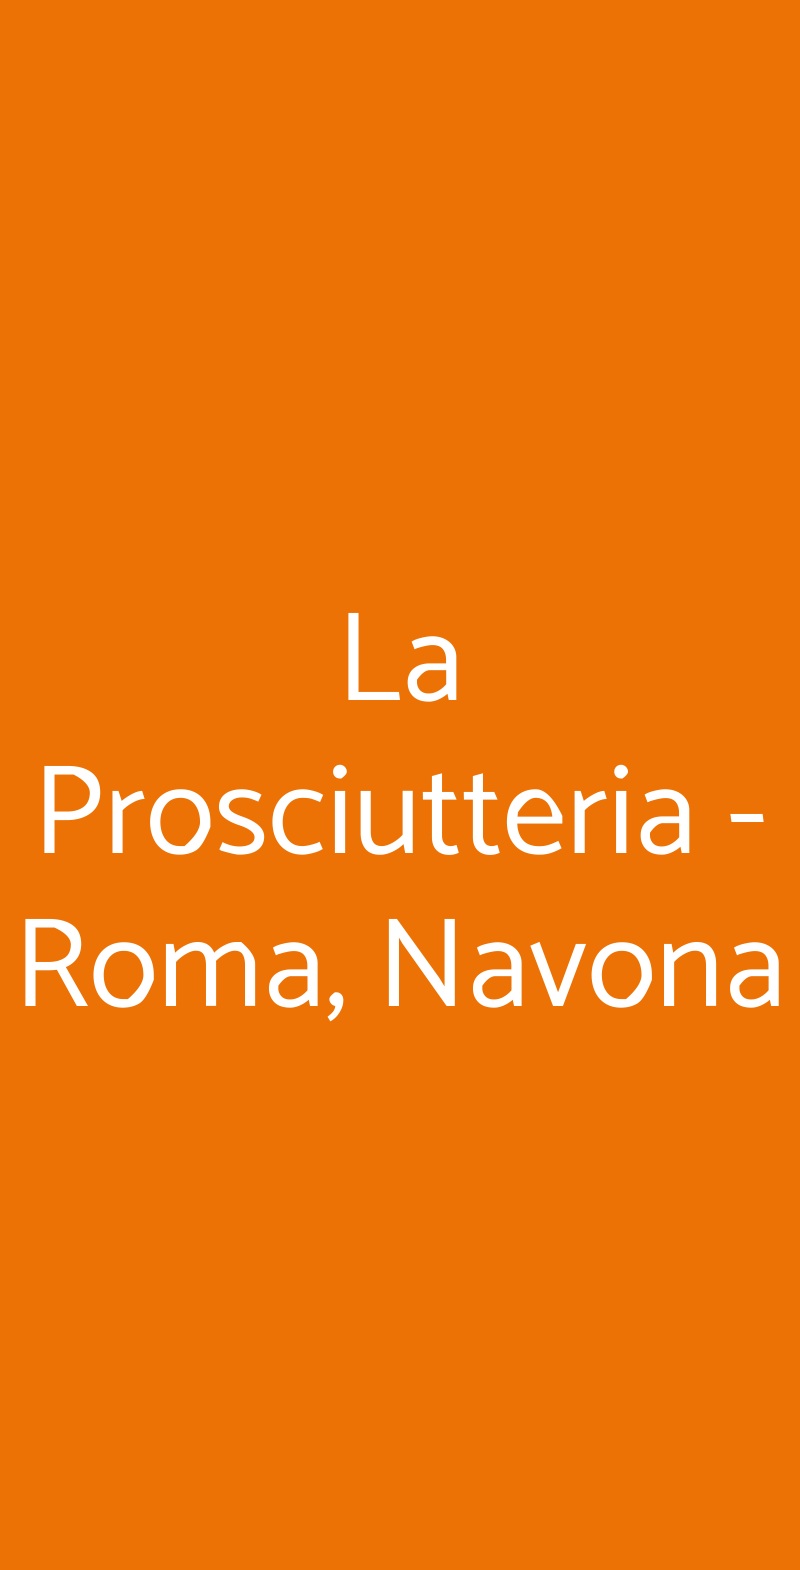 La Prosciutteria - Roma, Navona Roma menù 1 pagina